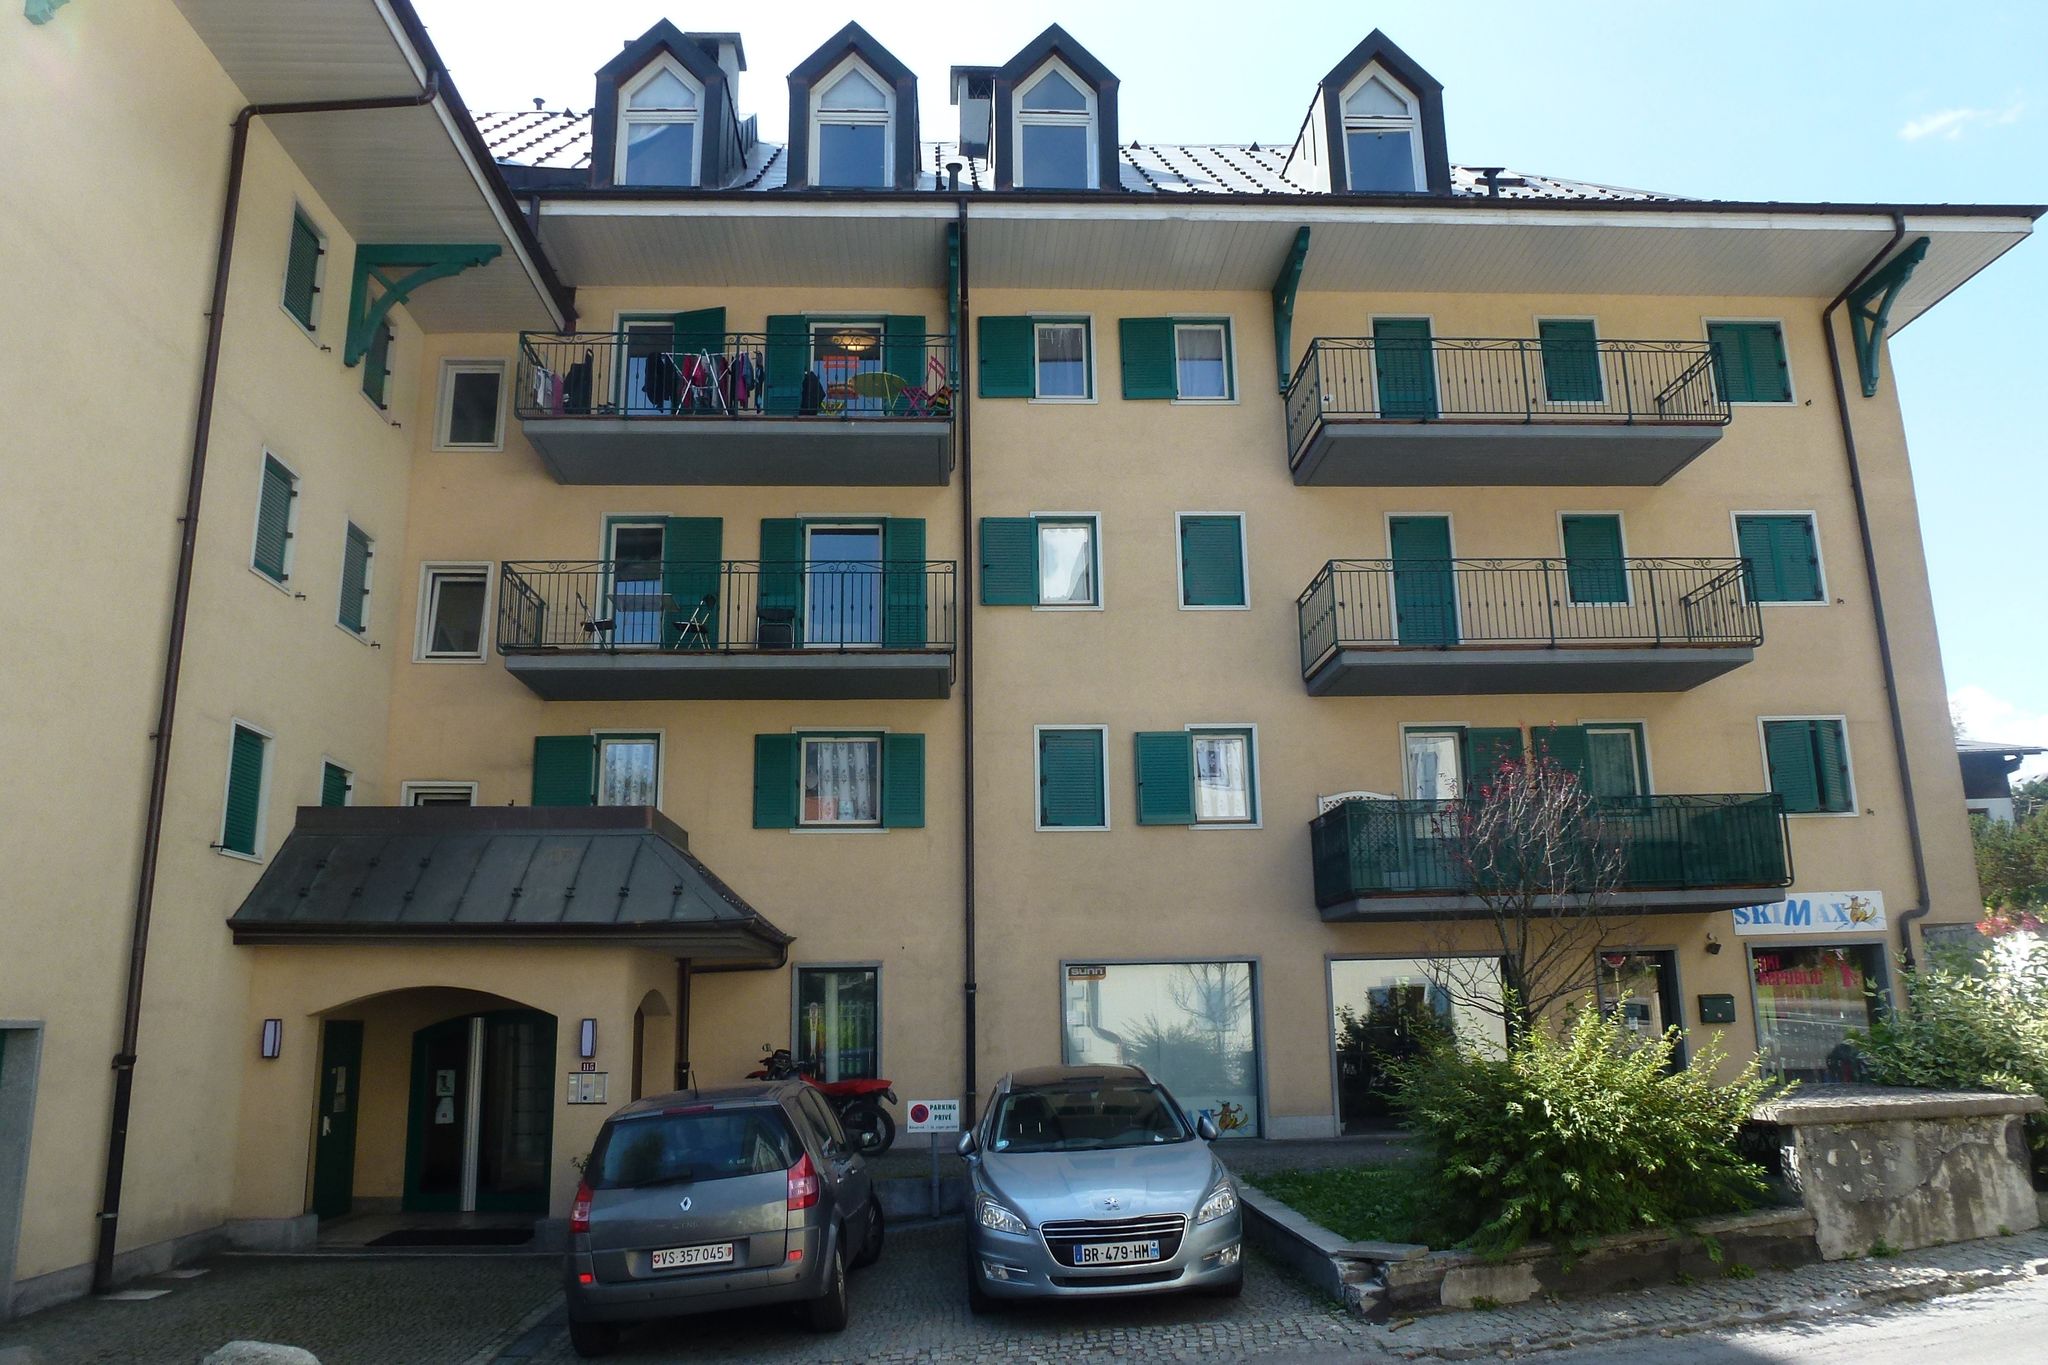 Appartement confortable à Chamonix France avec balcon